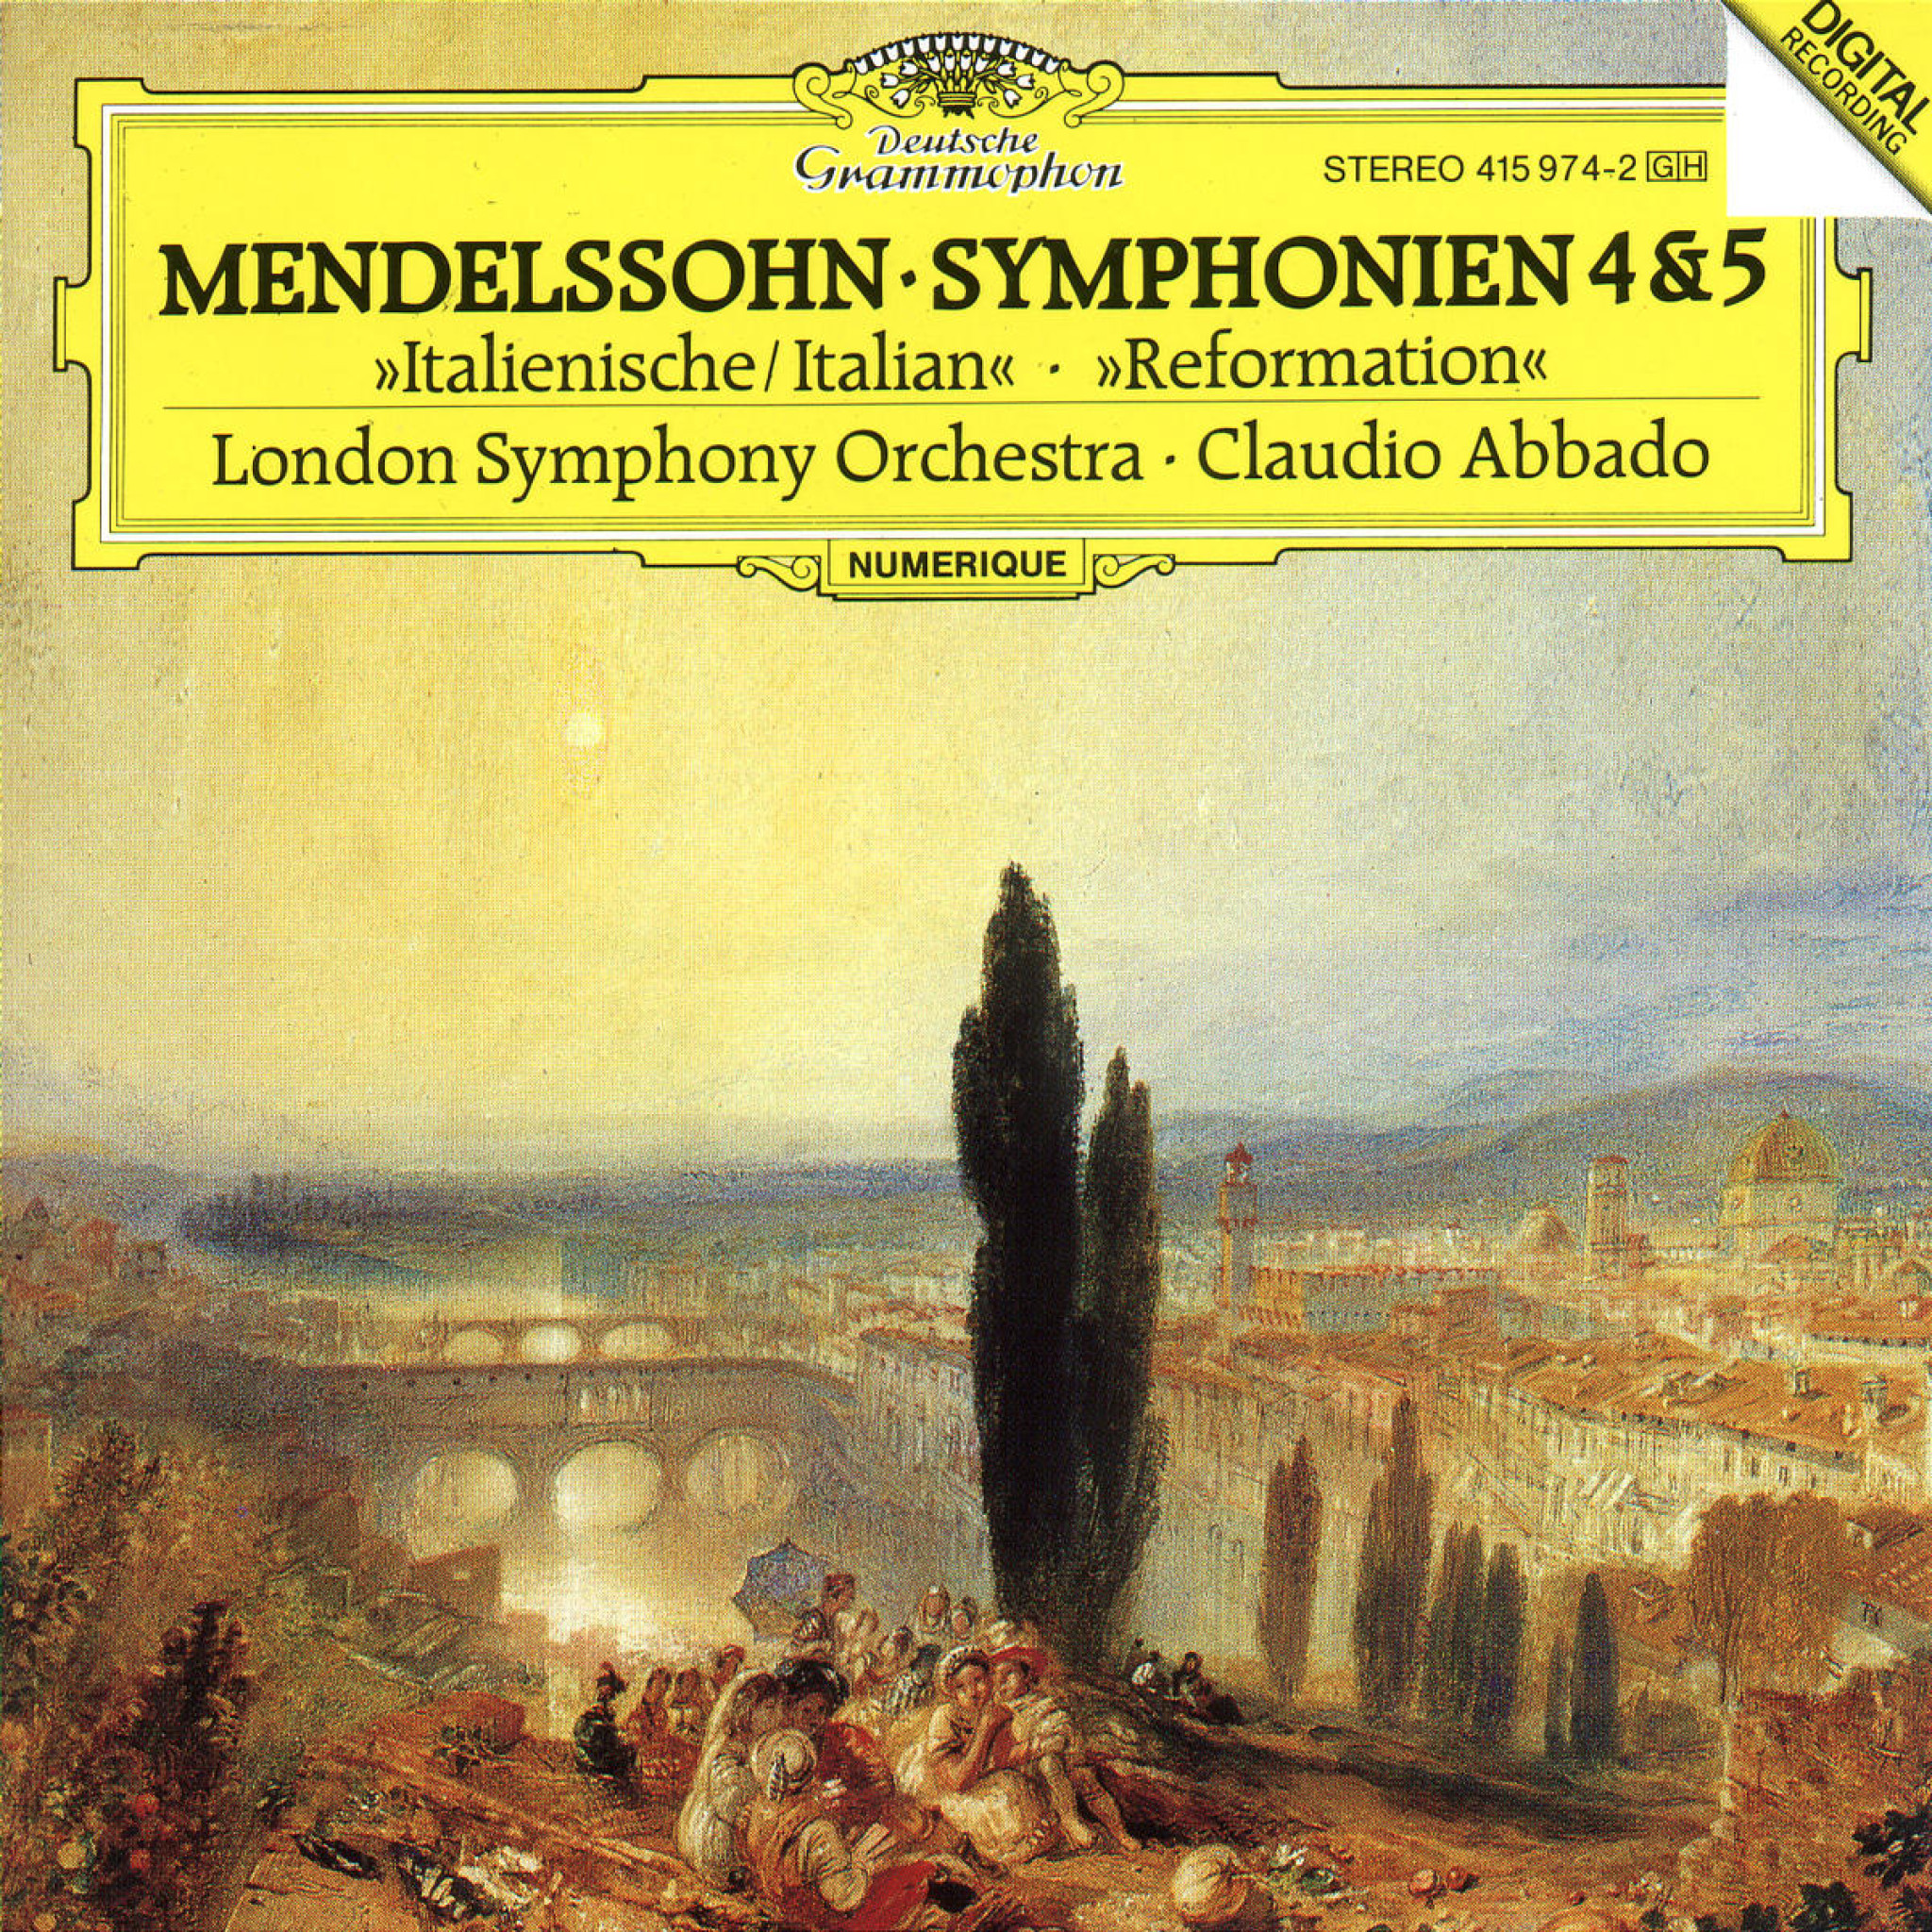 Sinfonien Nr. 4 A-dur op. 90 "Italienische" & Nr. 5 D-dur op. 107 "Reformation" 0028941597421